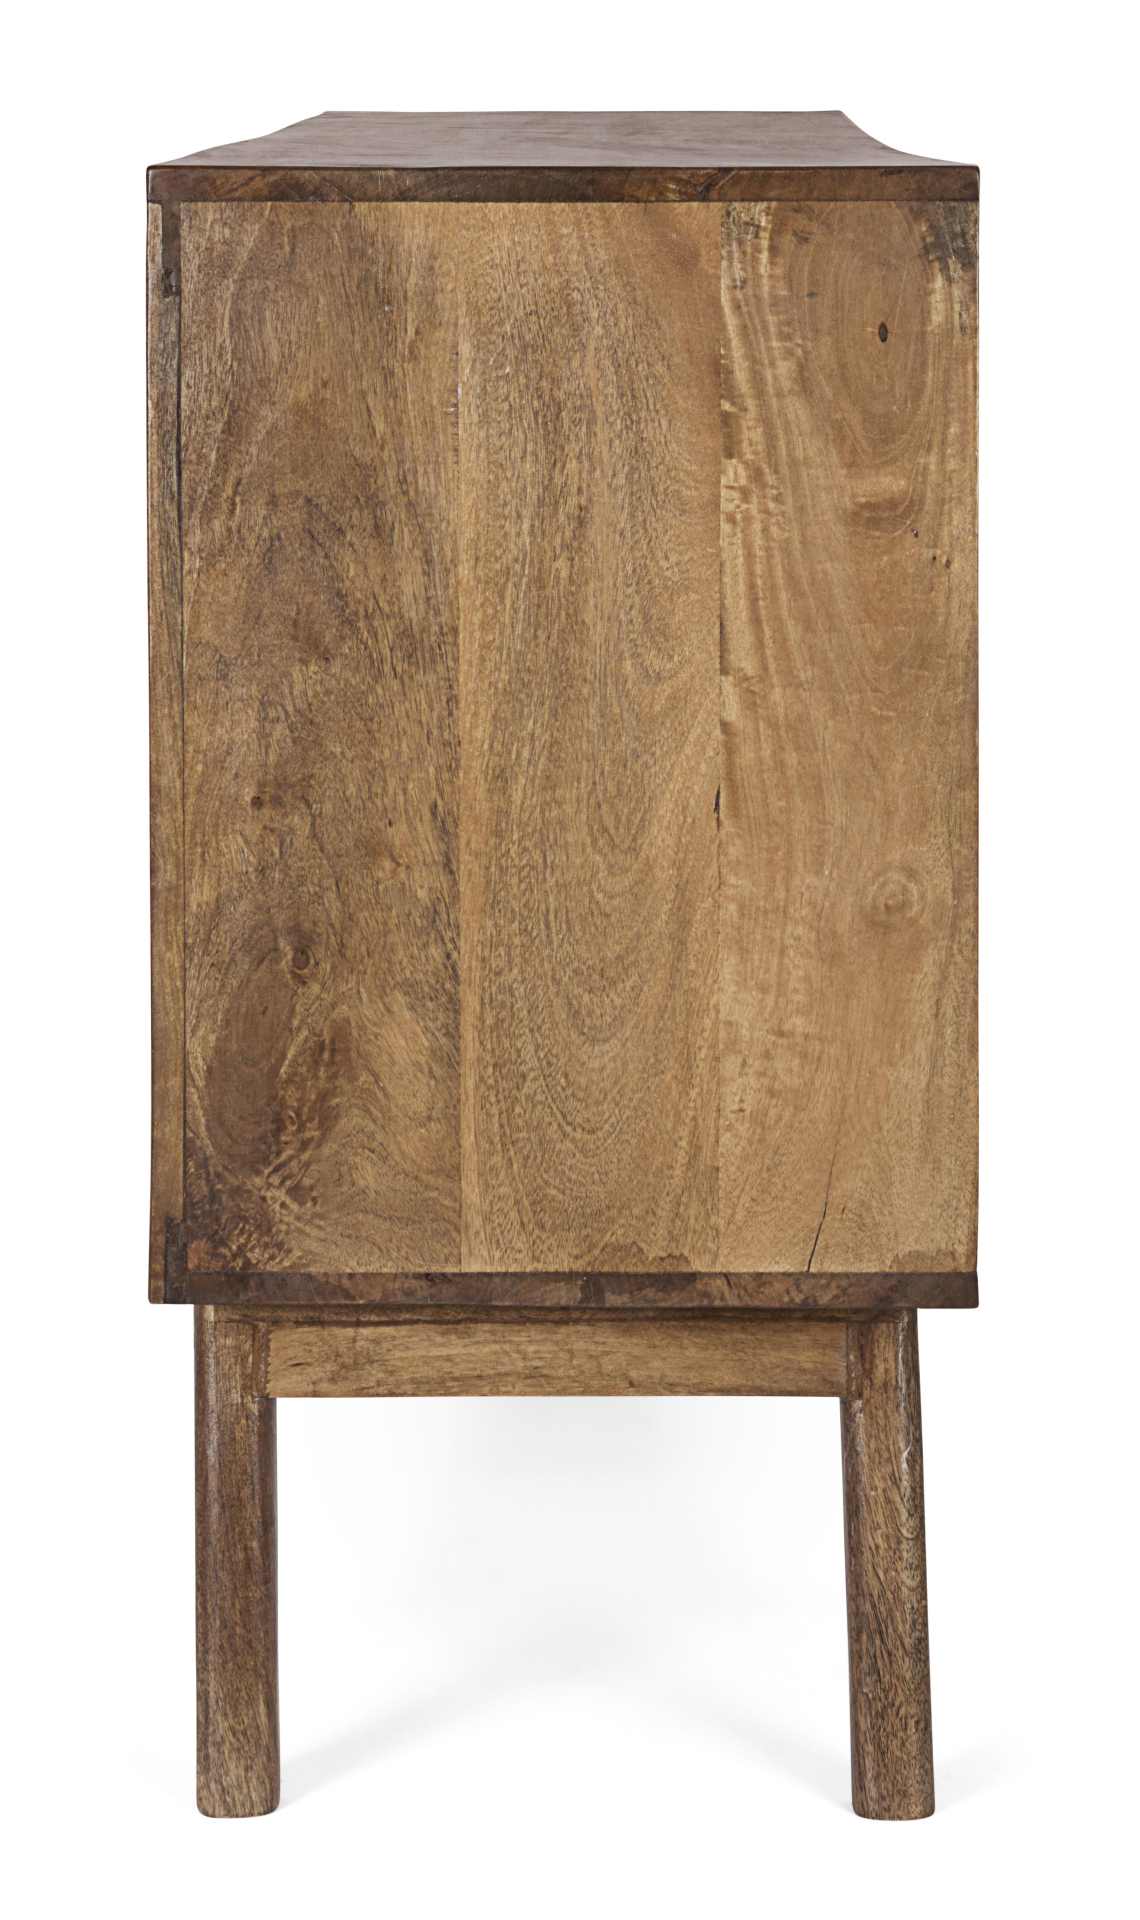 Das Sideboard Sylvester überzeugt mit seinem klassischen Design. Gefertigt wurde es aus Mangoholz, welches einen natürlichen Farbton besitzt. Das Gestell ist auch aus Mangoholz. Das Sideboard verfügt über zwei Türen und drei Schubladen. Die Breite beträgt